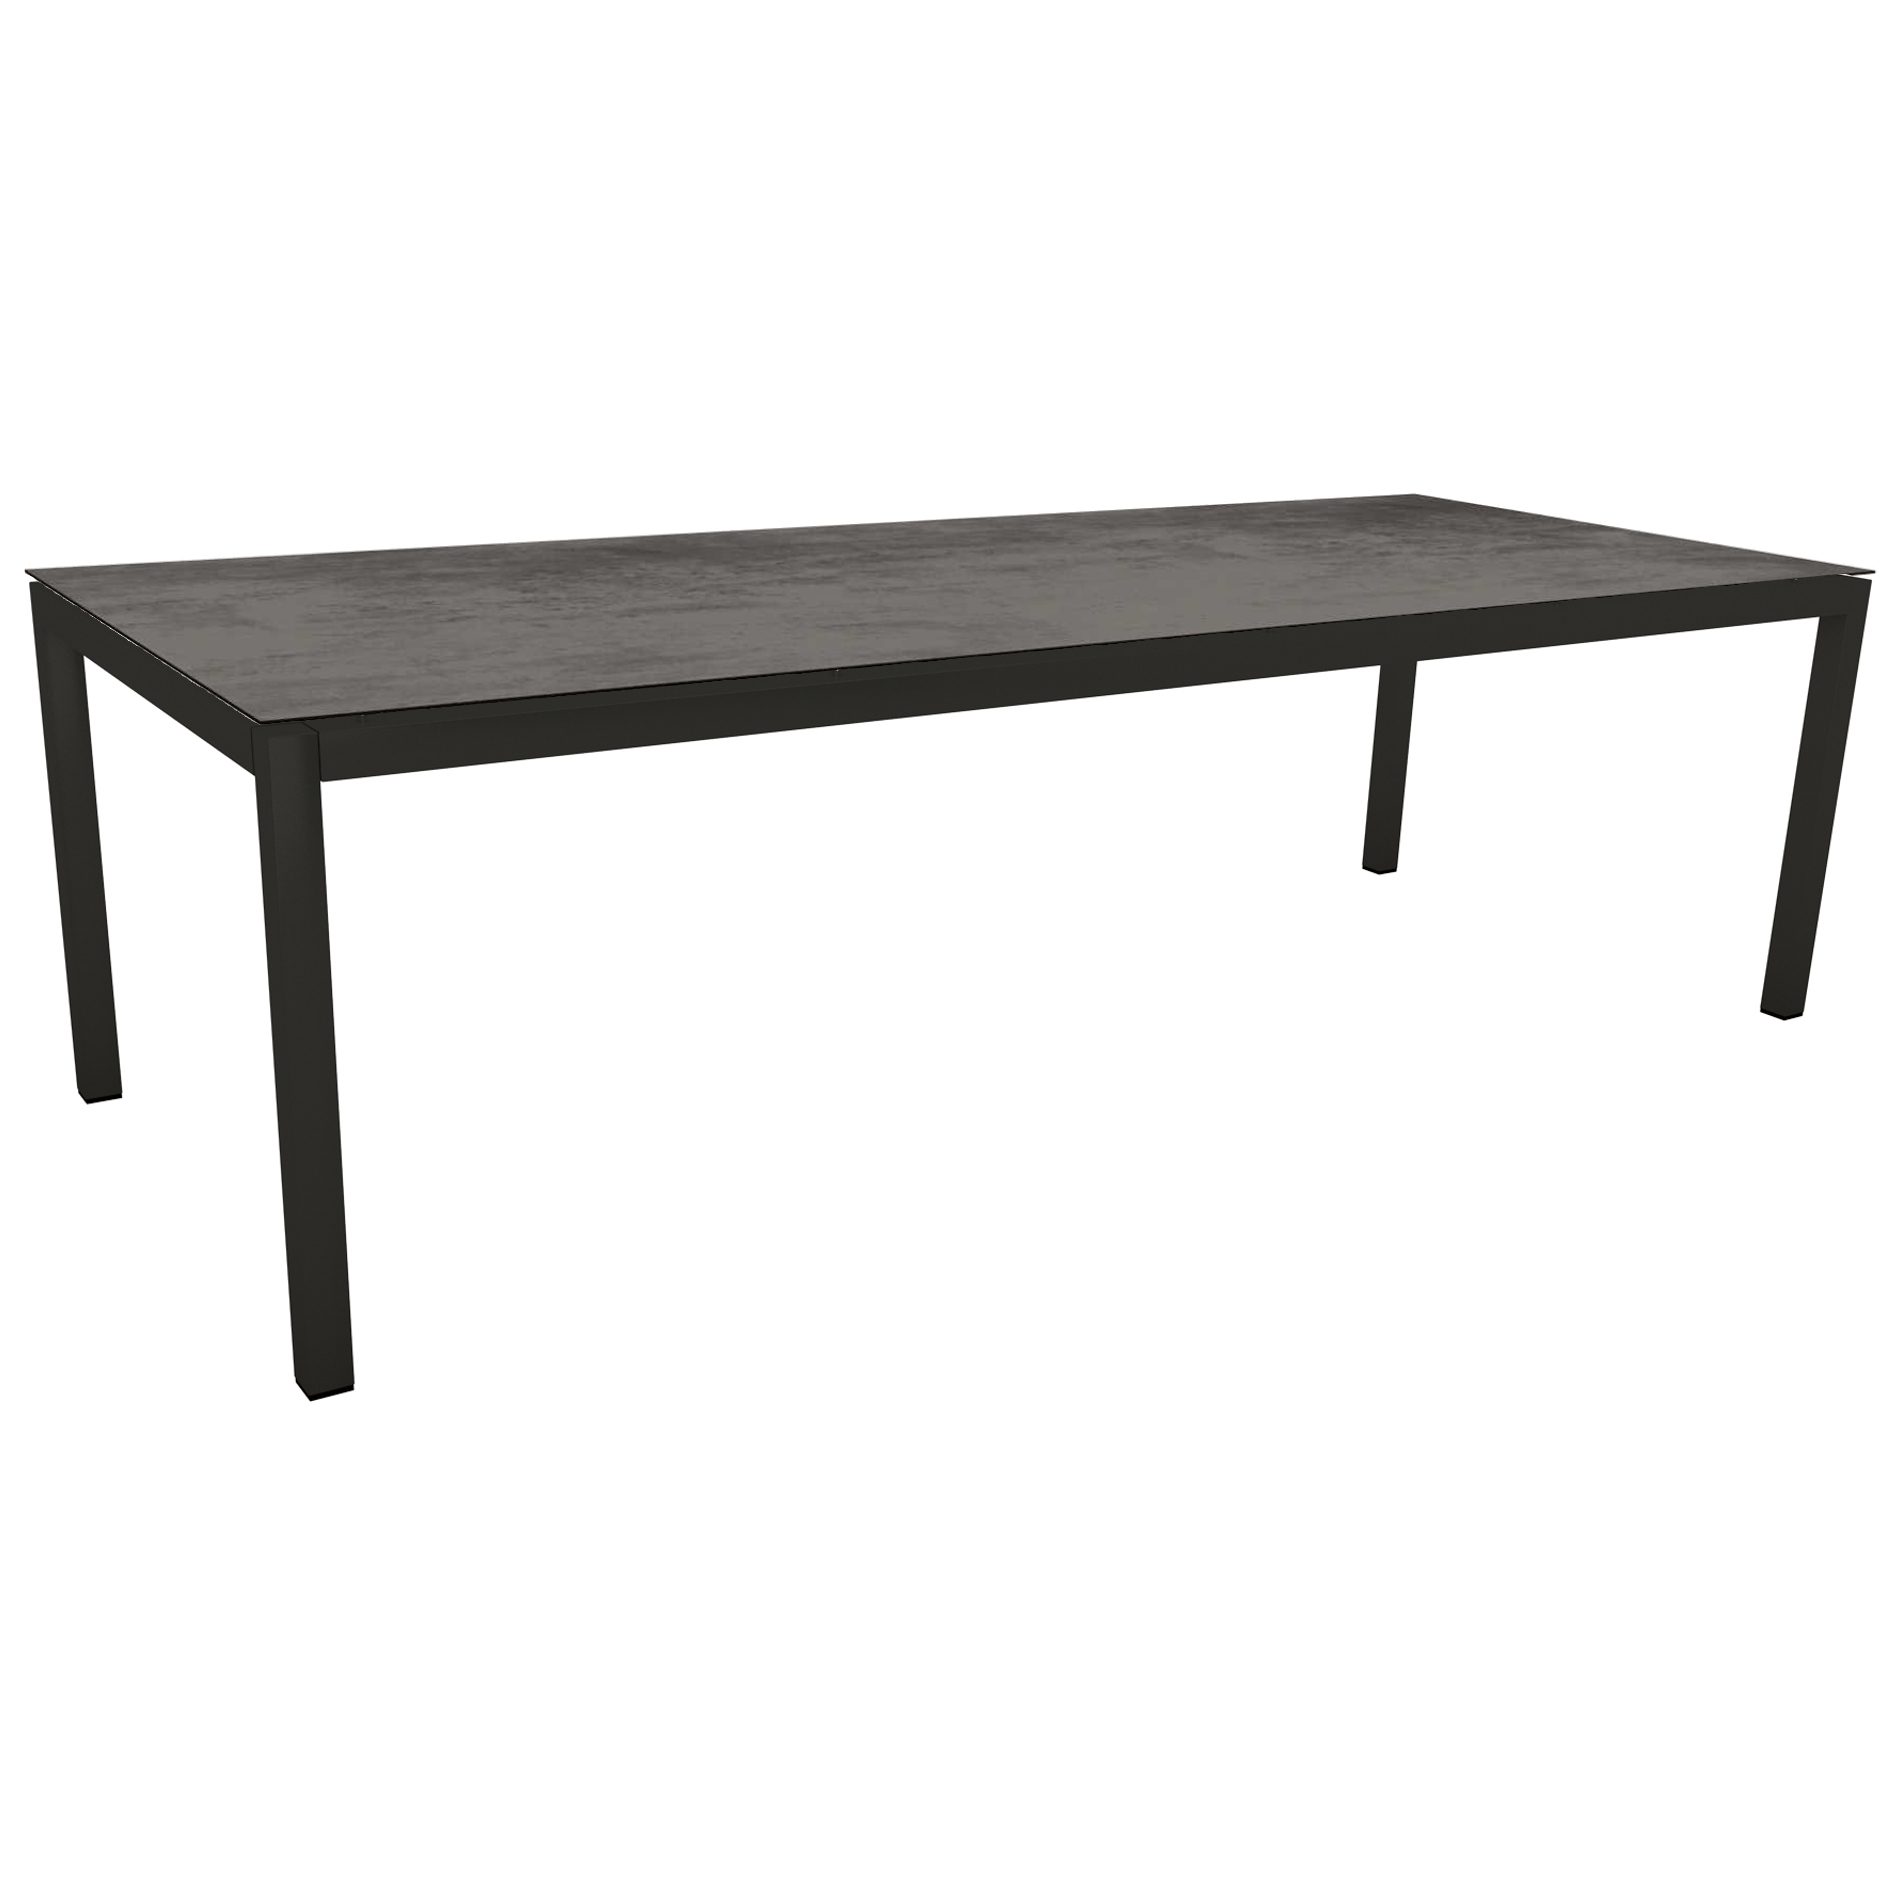 Stern Gartentisch, Gestell Aluminium schwarz matt, Tischplatte HPL Zement, 250x100cm